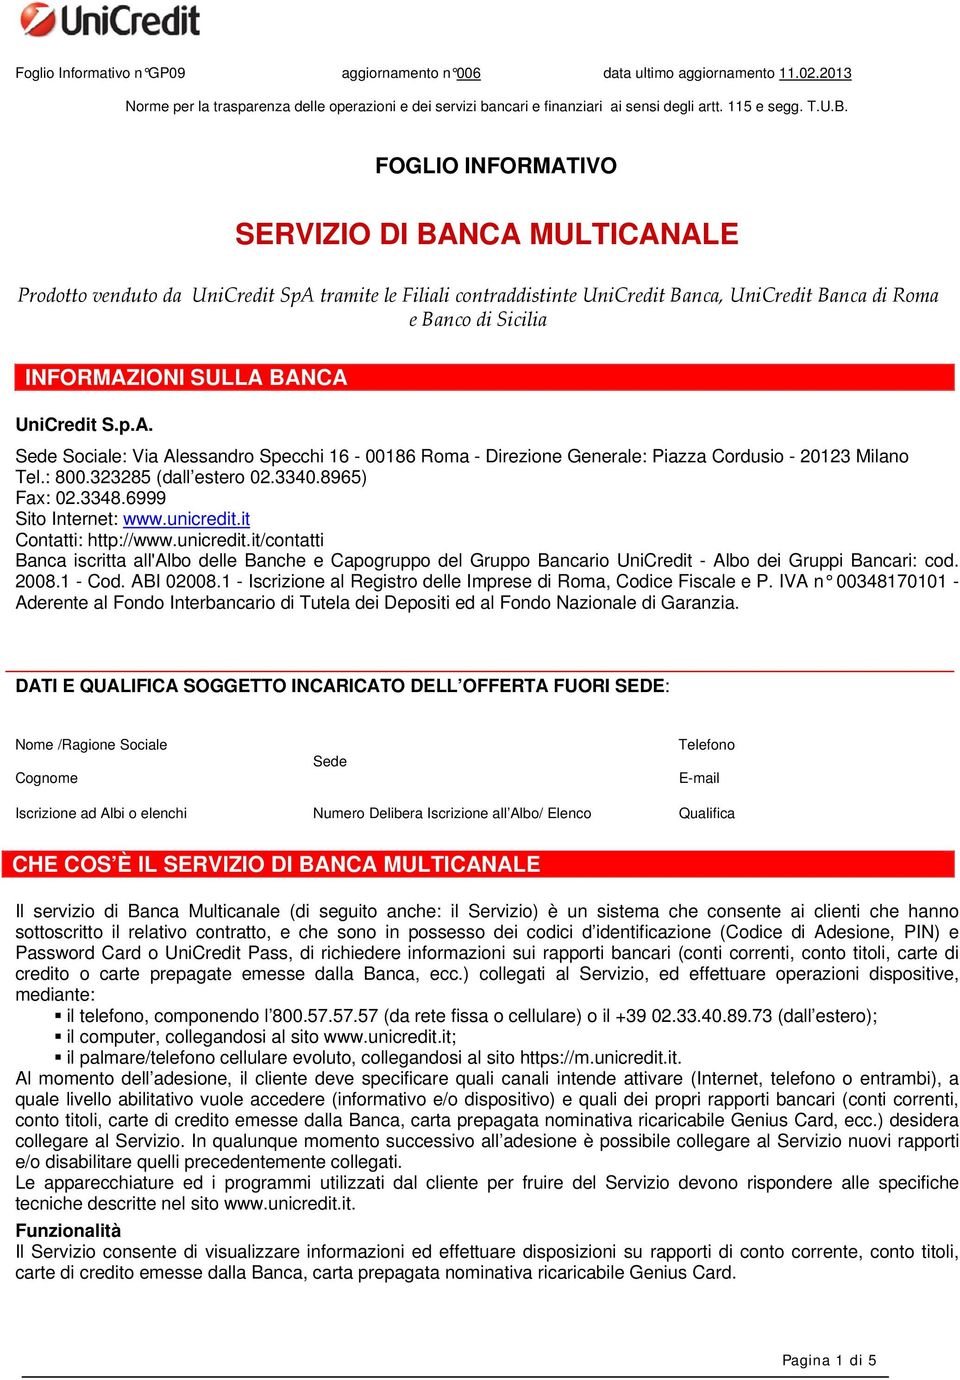 BANCA UniCredit S.p.A. Sede Sociale: Via Alessandro Specchi 16-00186 Roma - Direzione Generale: Piazza Cordusio - 20123 Milano Tel.: 800.323285 (dall estero 02.3340.8965) Fax: 02.3348.